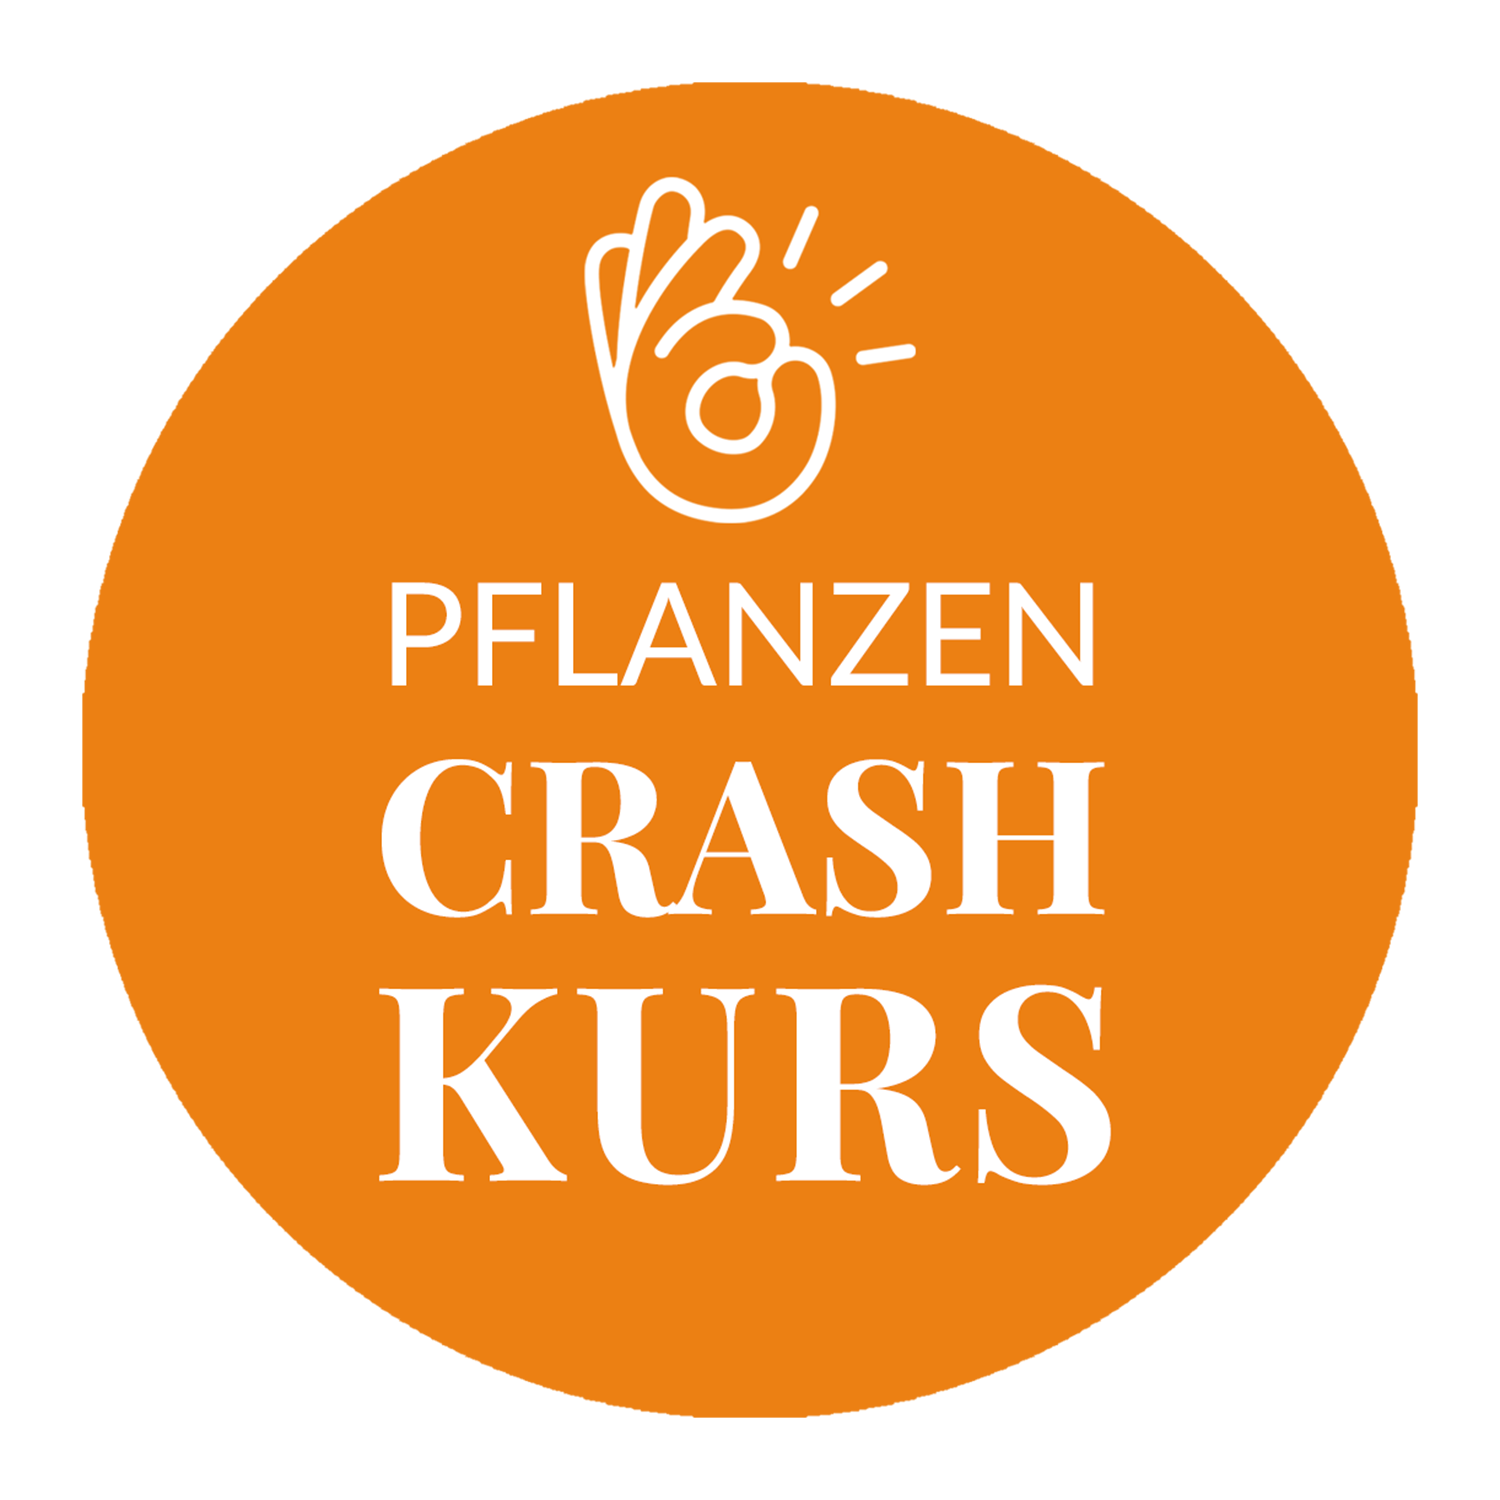 Pflanzen Crash Kurs - Logo in orange